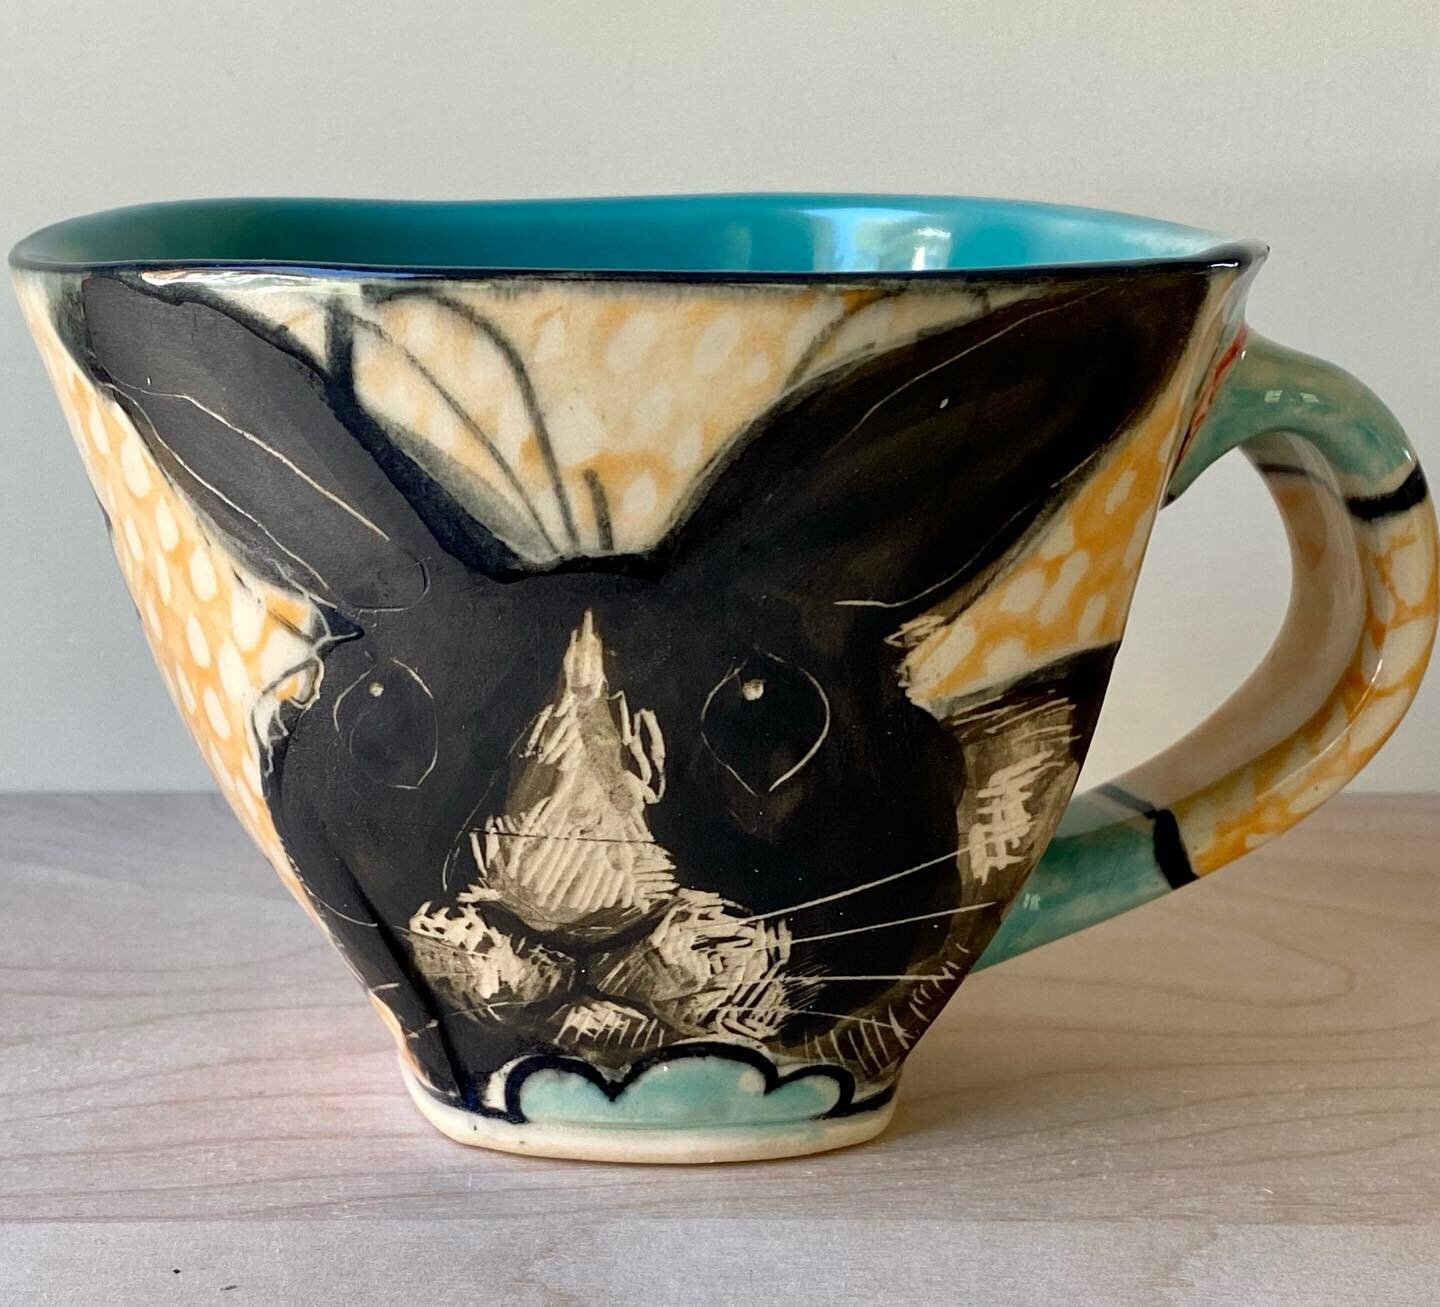 Big bunny mug for a rainy Sunday #bigbunny #studiopotter #potterylove #art